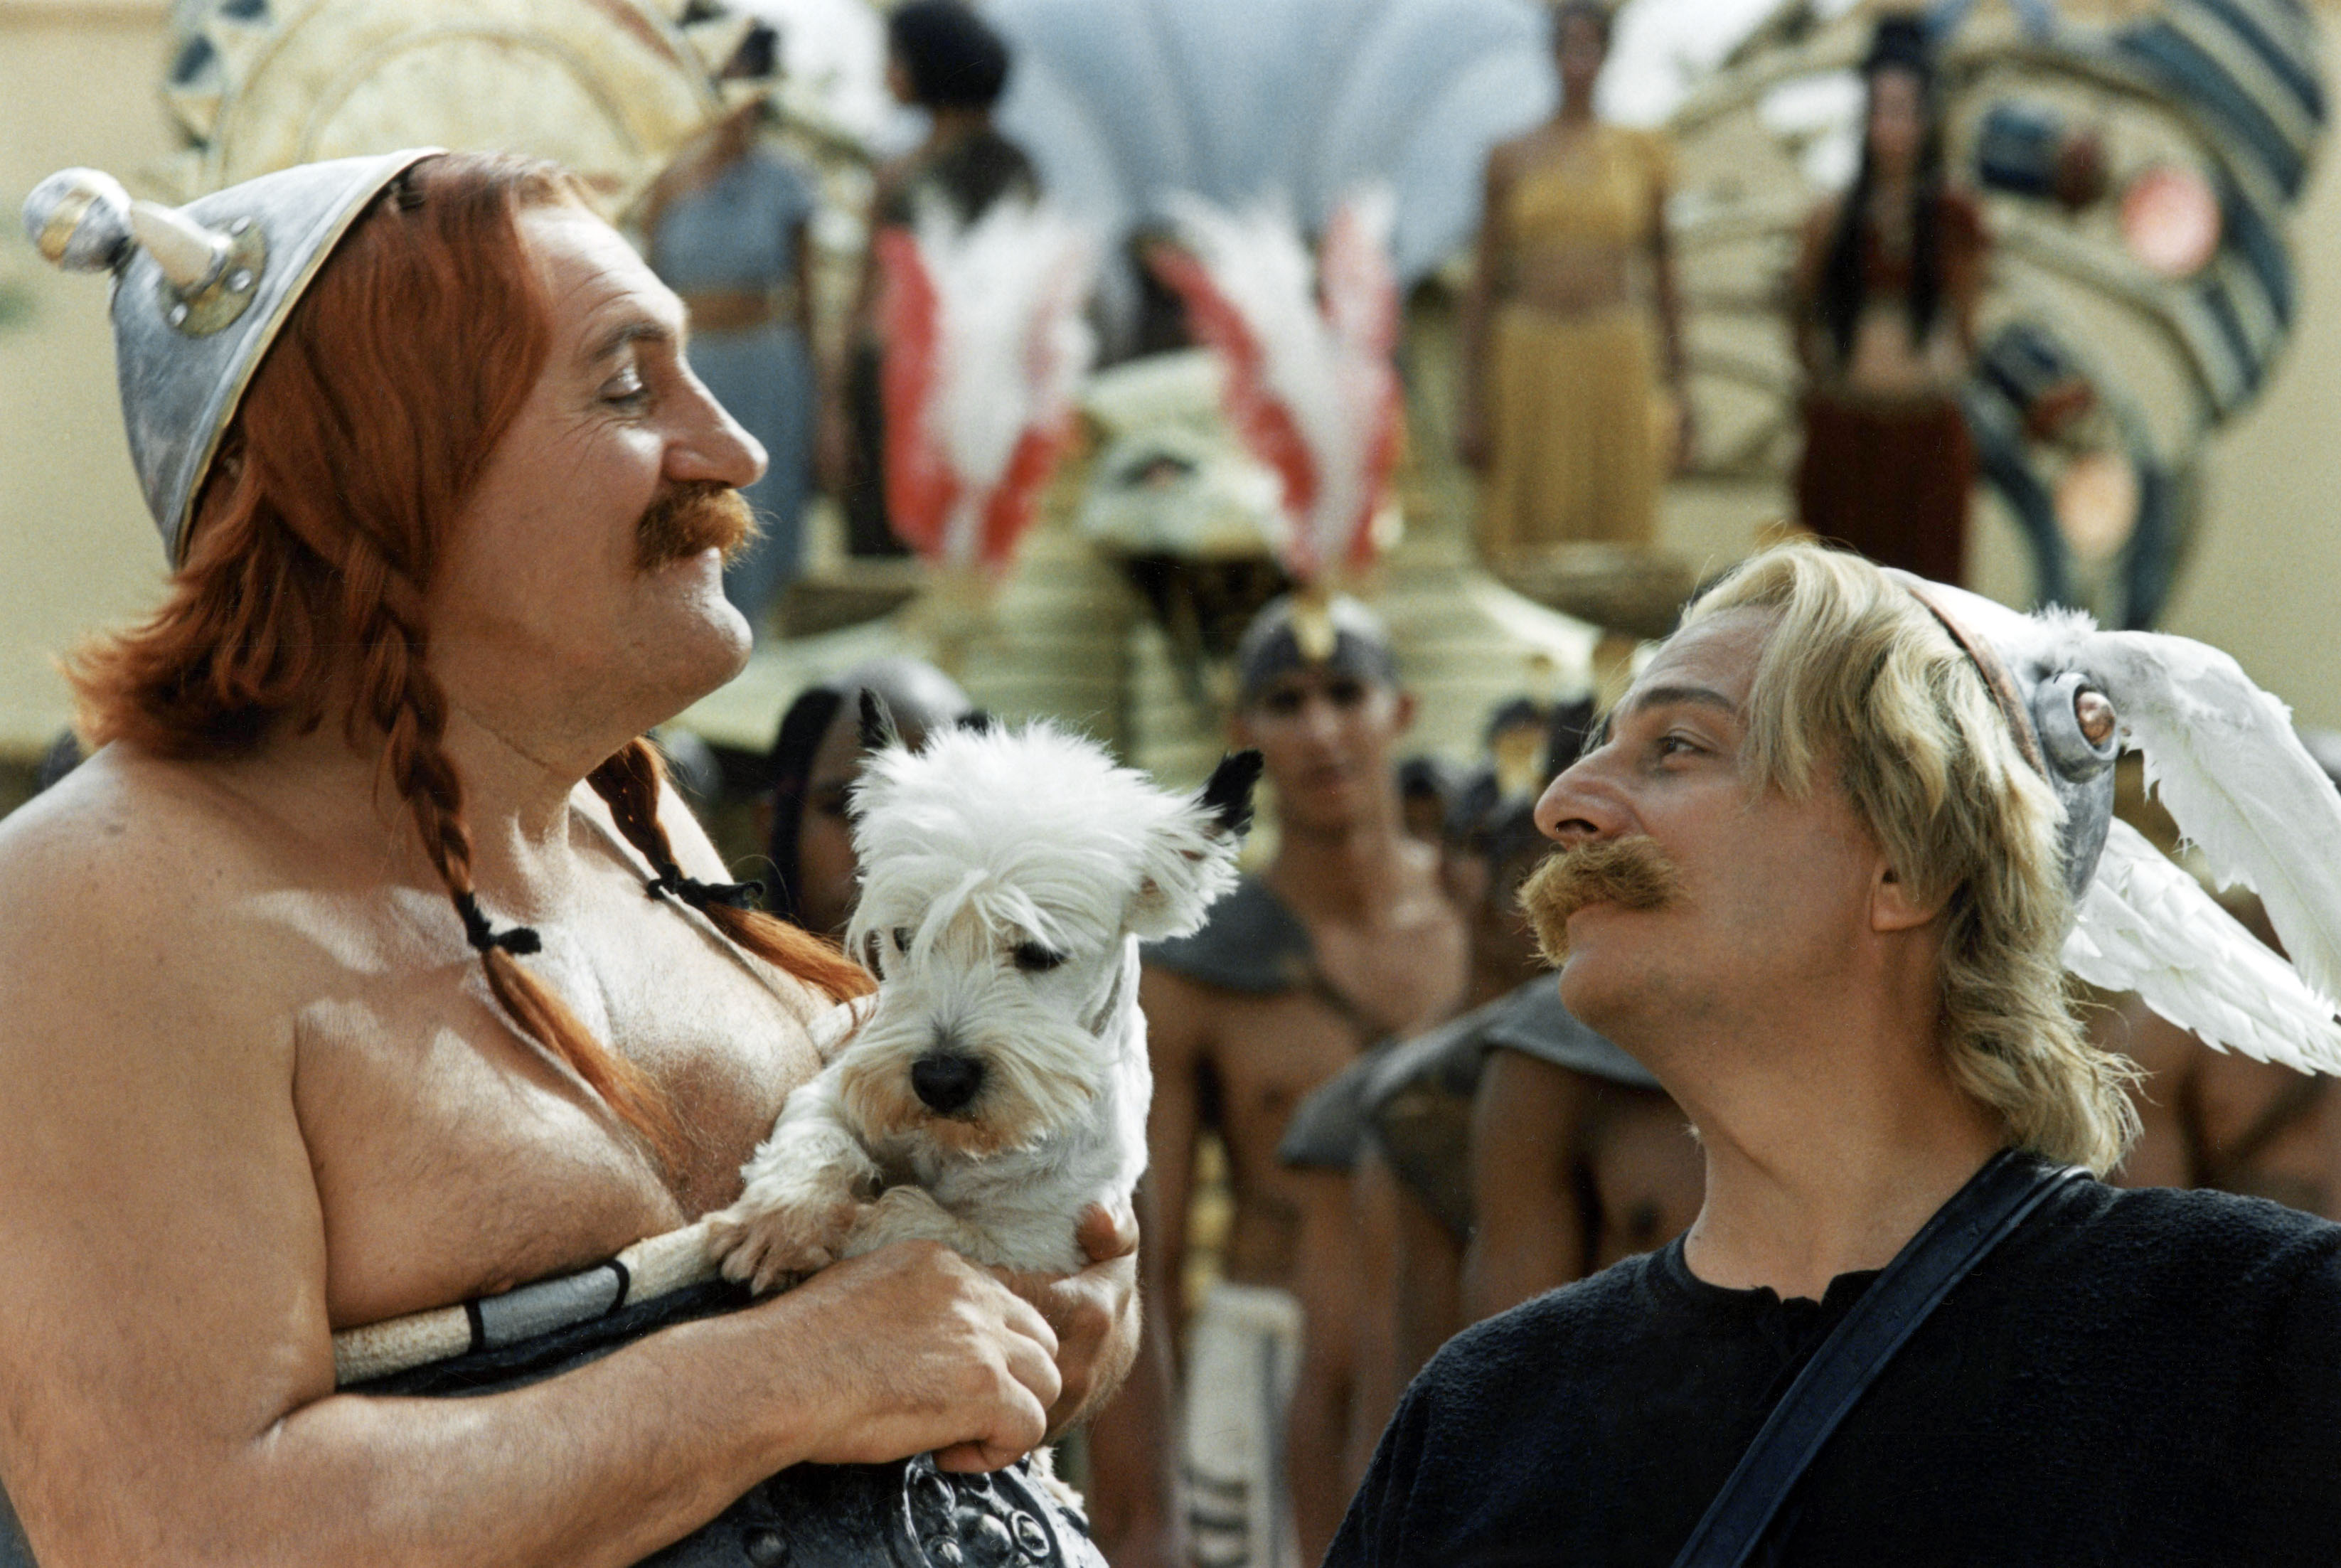 Still of Gérard Depardieu and Christian Clavier in Astérix & Obélix: Mission Cléopâtre (2002)